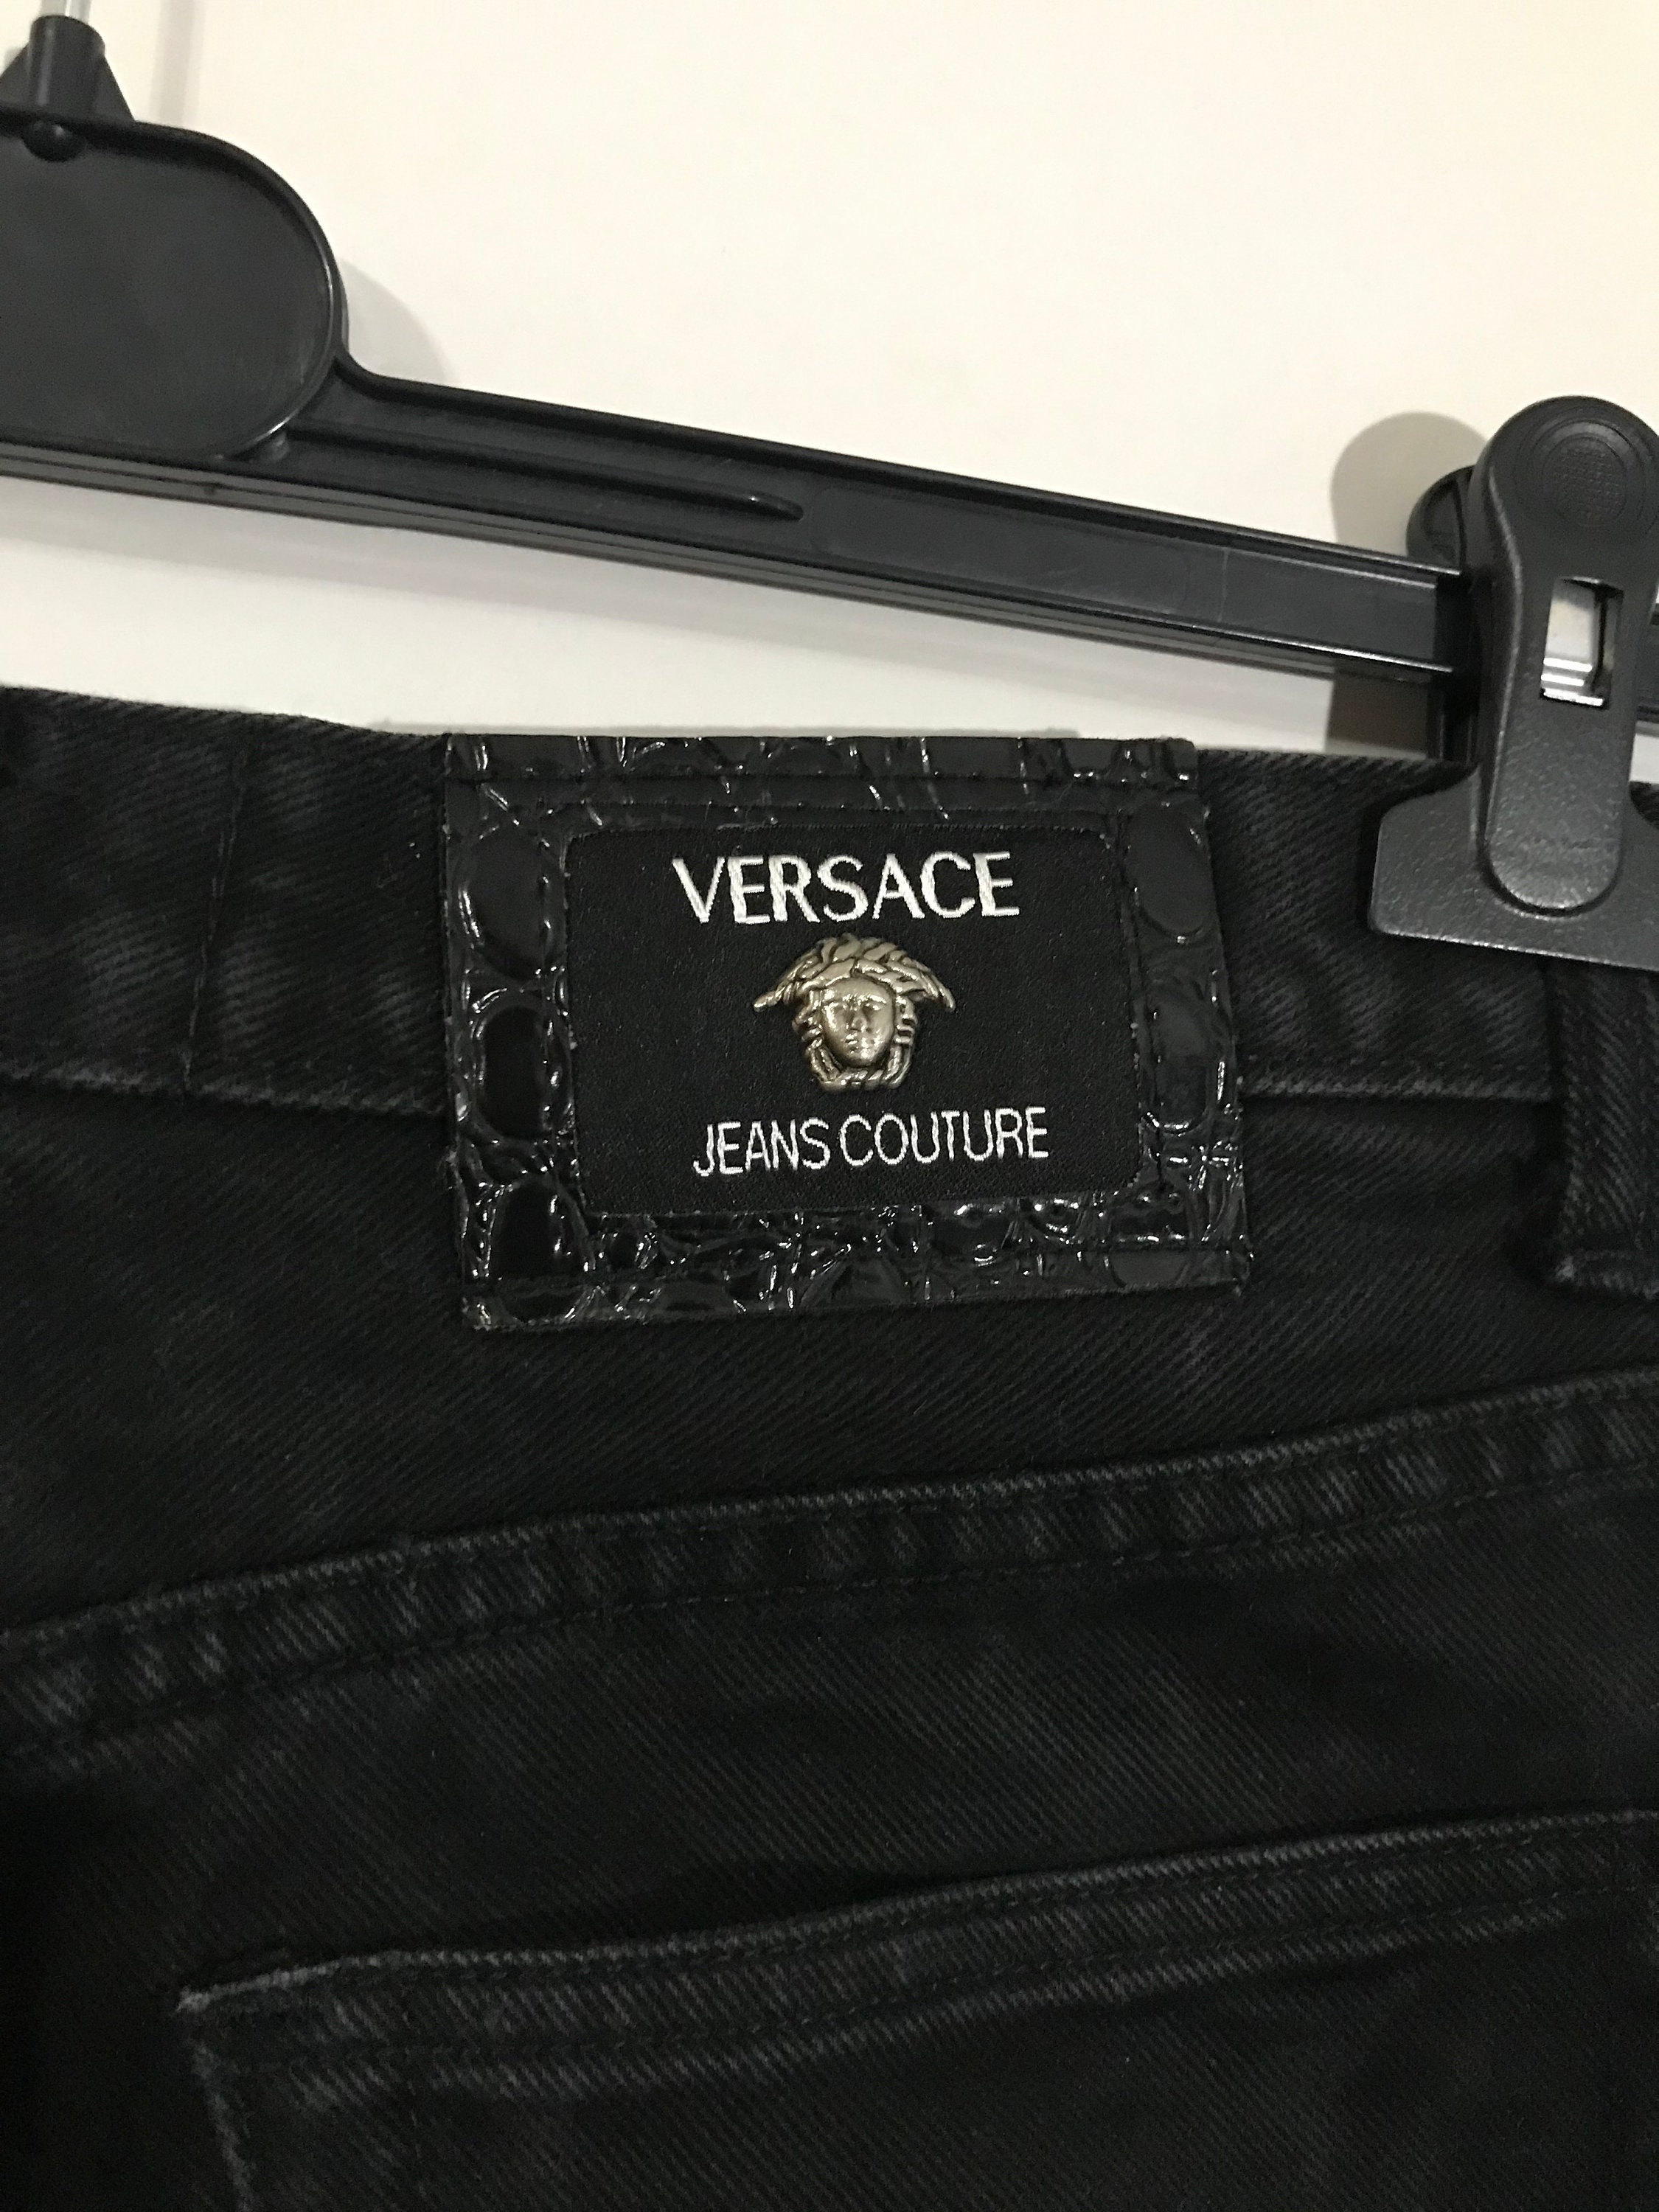 Vintage Versace Jeans Couture Black High Waisted Jeans – Aquelarre Shop